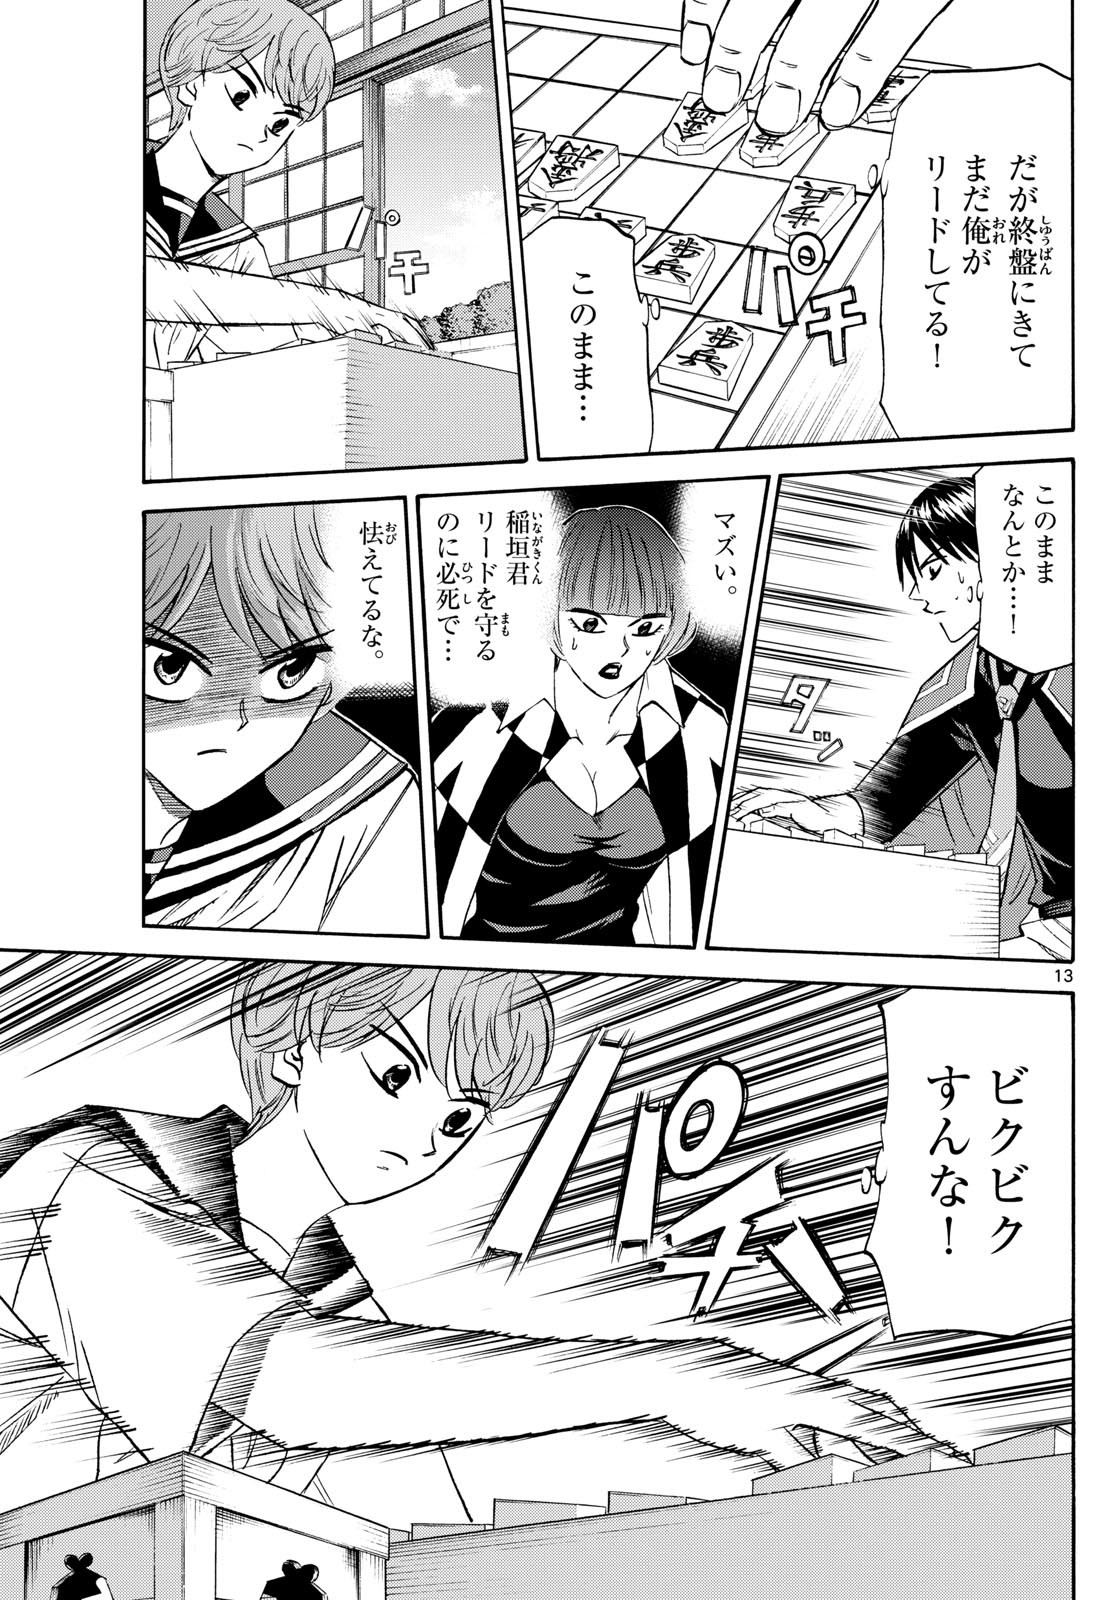 Ryu-to-Ichigo - Chapter 198 - Page 13